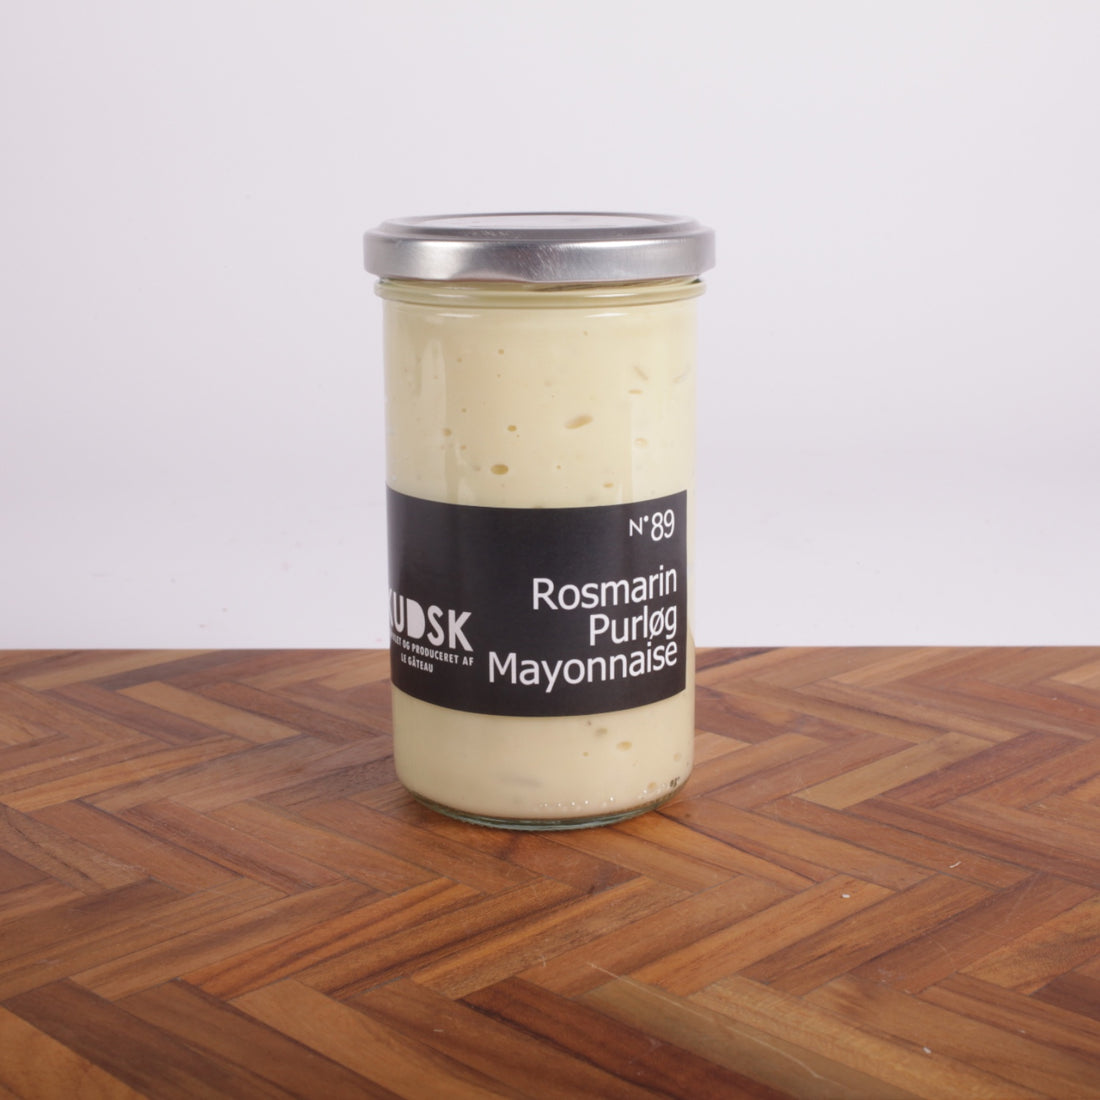 Kudsk - Rosmarin purløg mayonnaise